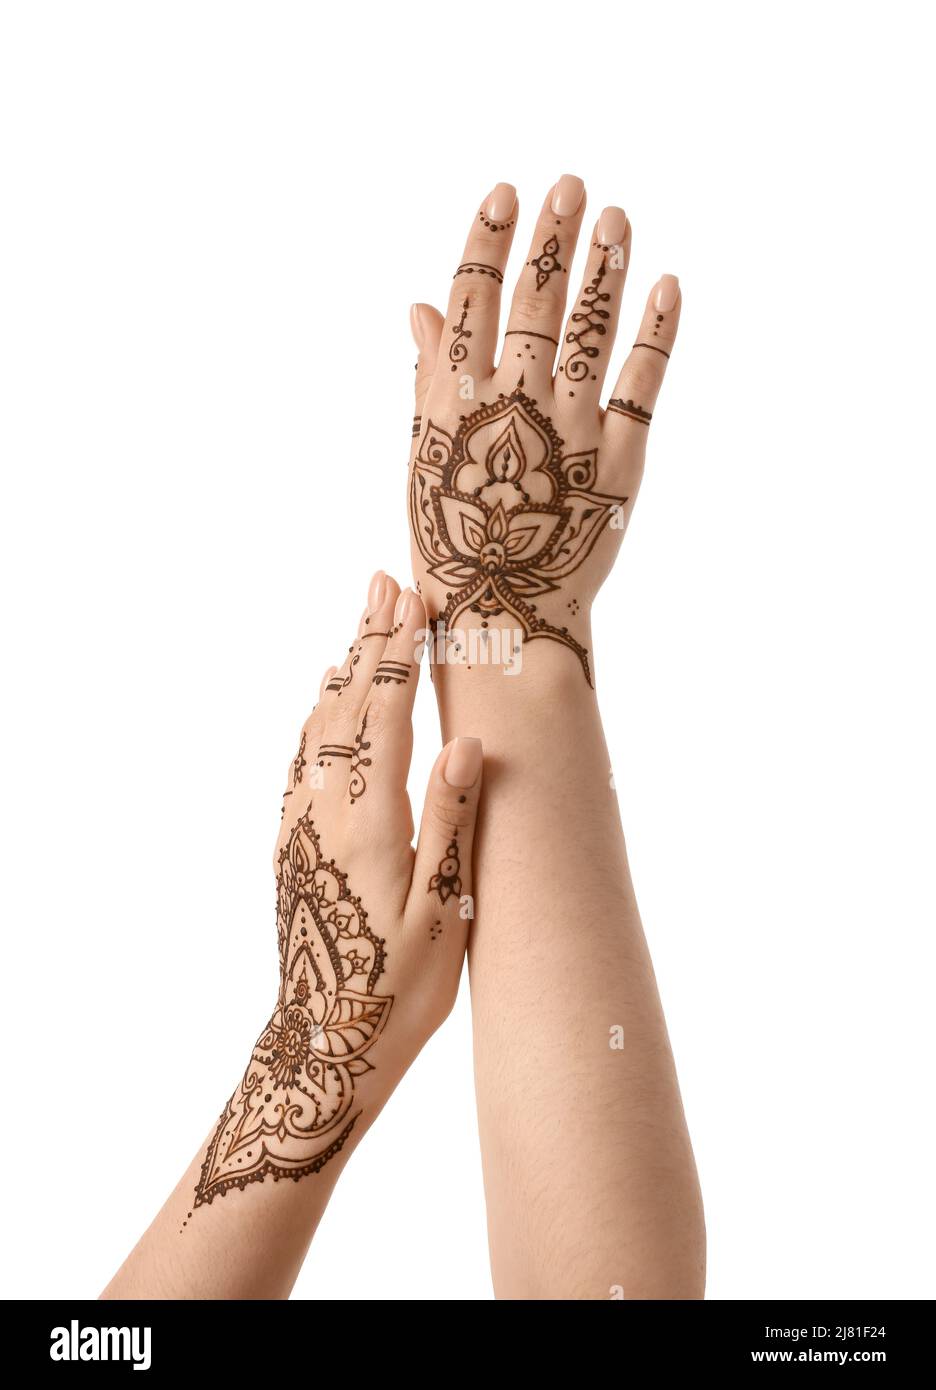 Mains de femmes avec beau tatouage henné sur fond blanc Photo Stock - Alamy